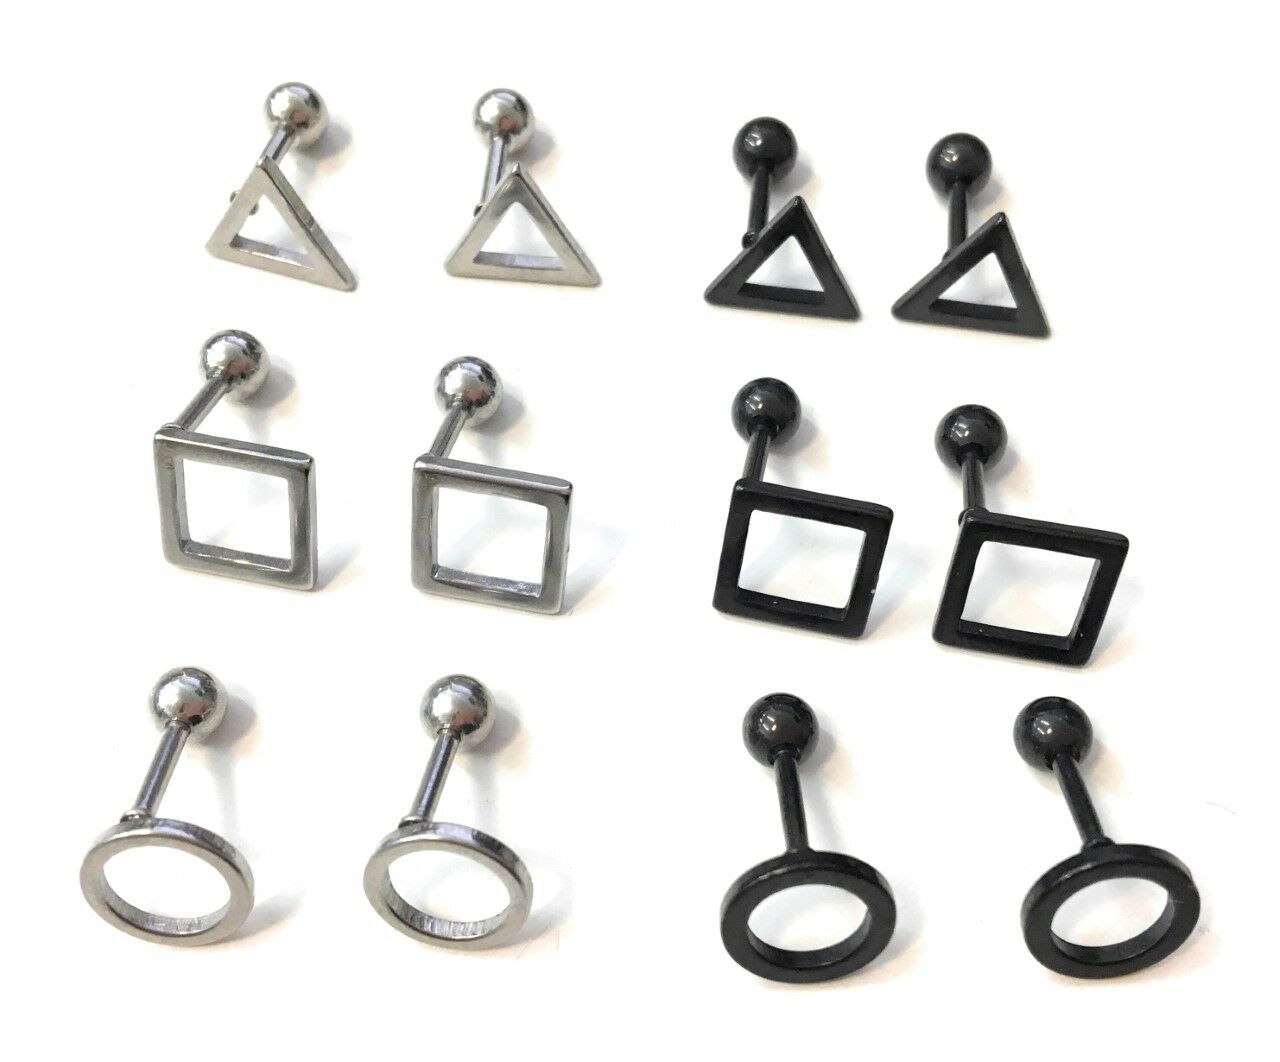 Mens Stainless Steel Earrings Studs - Screw On Geometric Designs Black or Silver